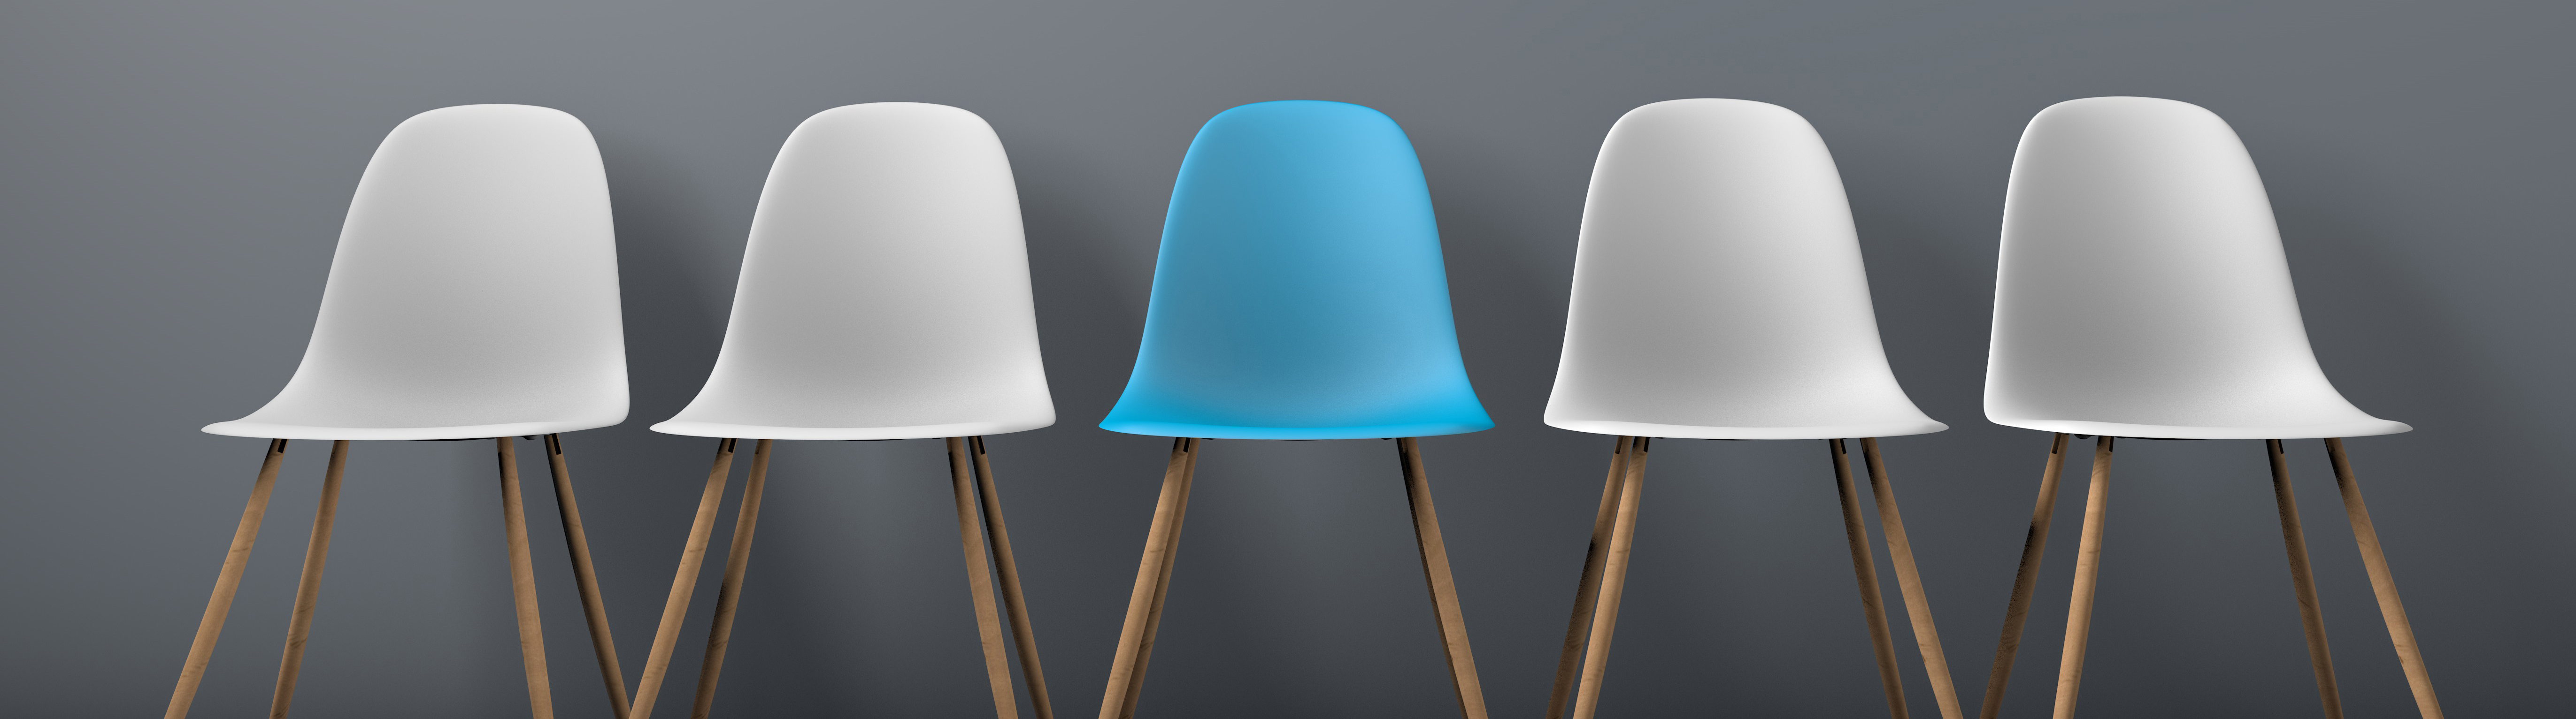 Wir freuen uns auf Sie. Ein blauer freier Stuhl zwischen 4 weißen Stühlen.
					©AdobeStock_177671347kleien_ink drop
				